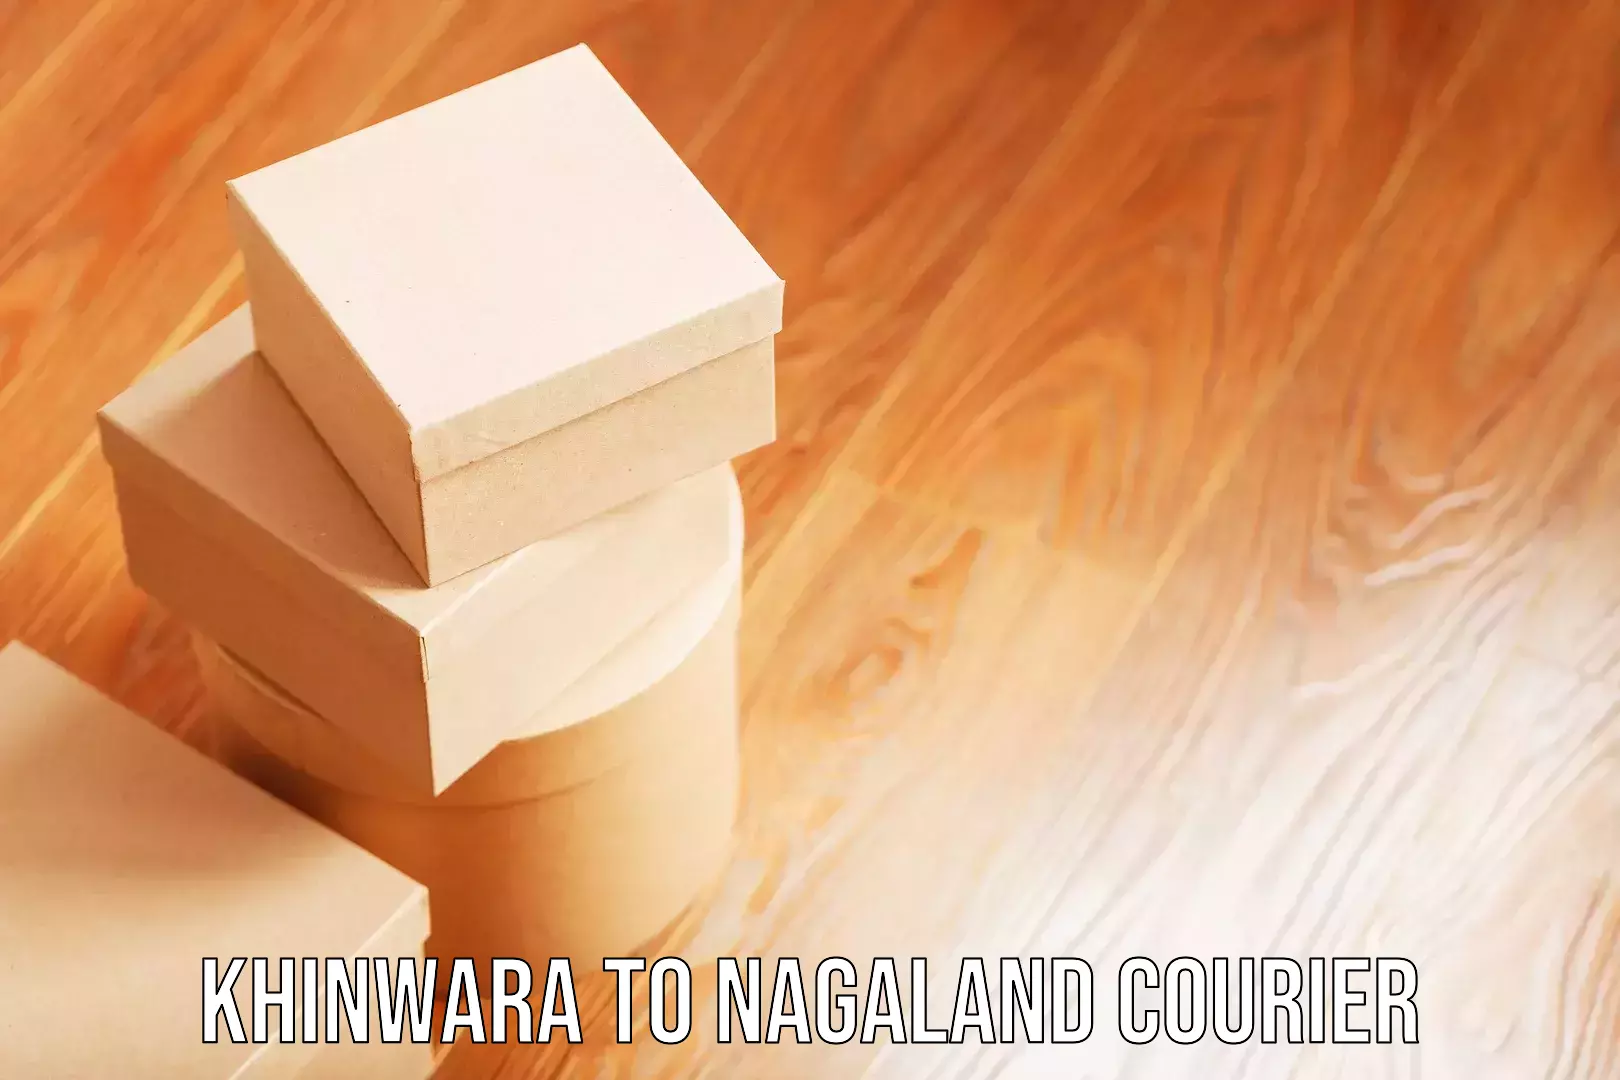 Luggage delivery estimate Khinwara to Nagaland